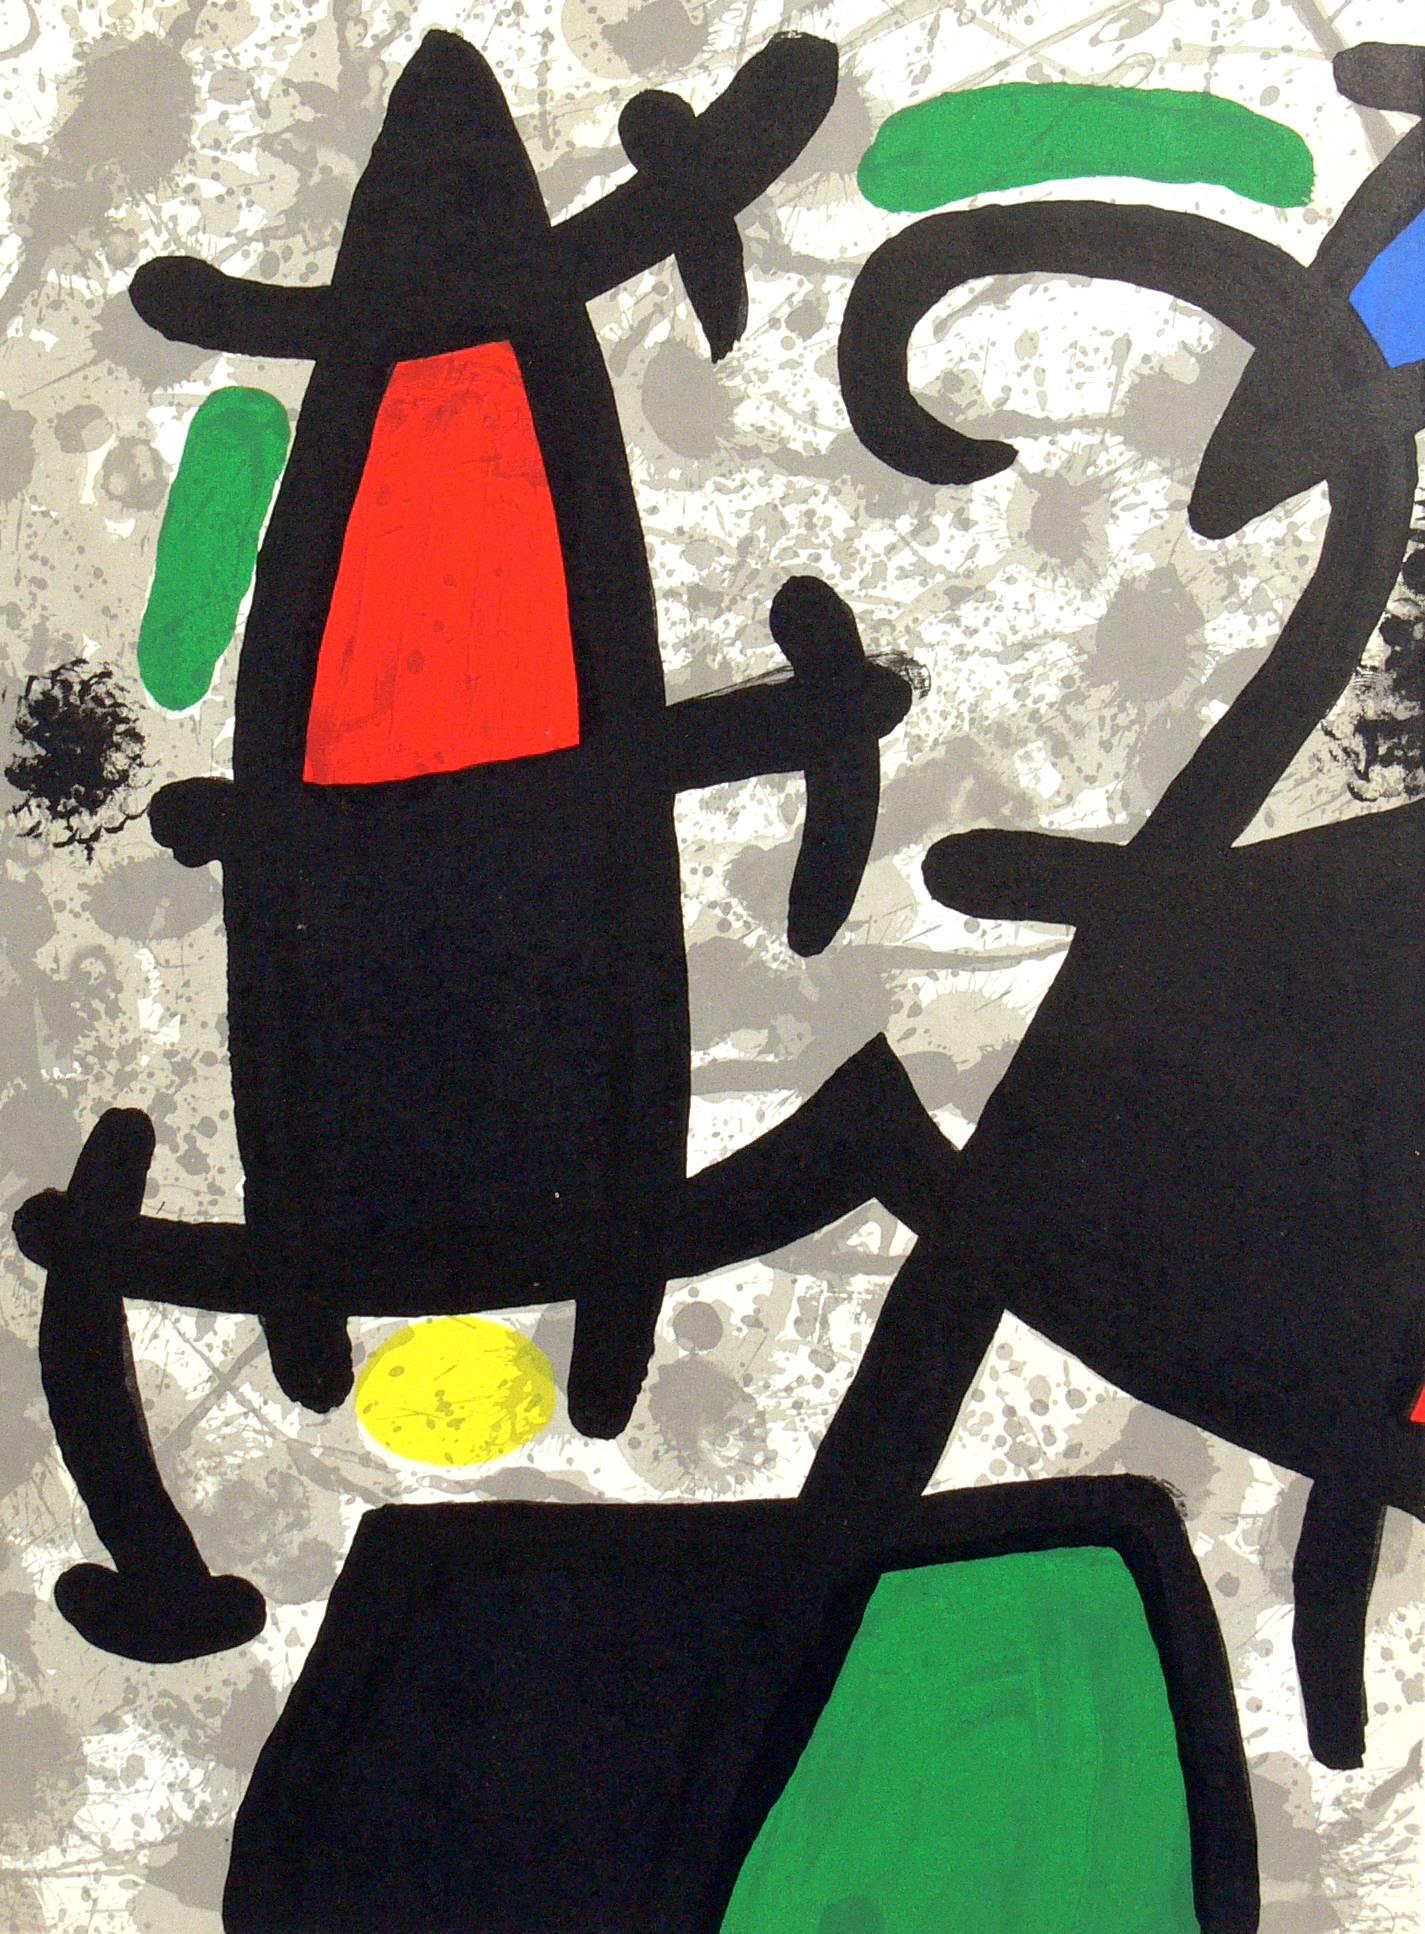 Sélection de lithographies en couleur de Joan Miro, France, vers les années 1960. La lithographie de gauche sur la première photo a été vendue. Les deux autres sont disponibles. Nous avons acheté un groupe de ces lithographies en couleur à la